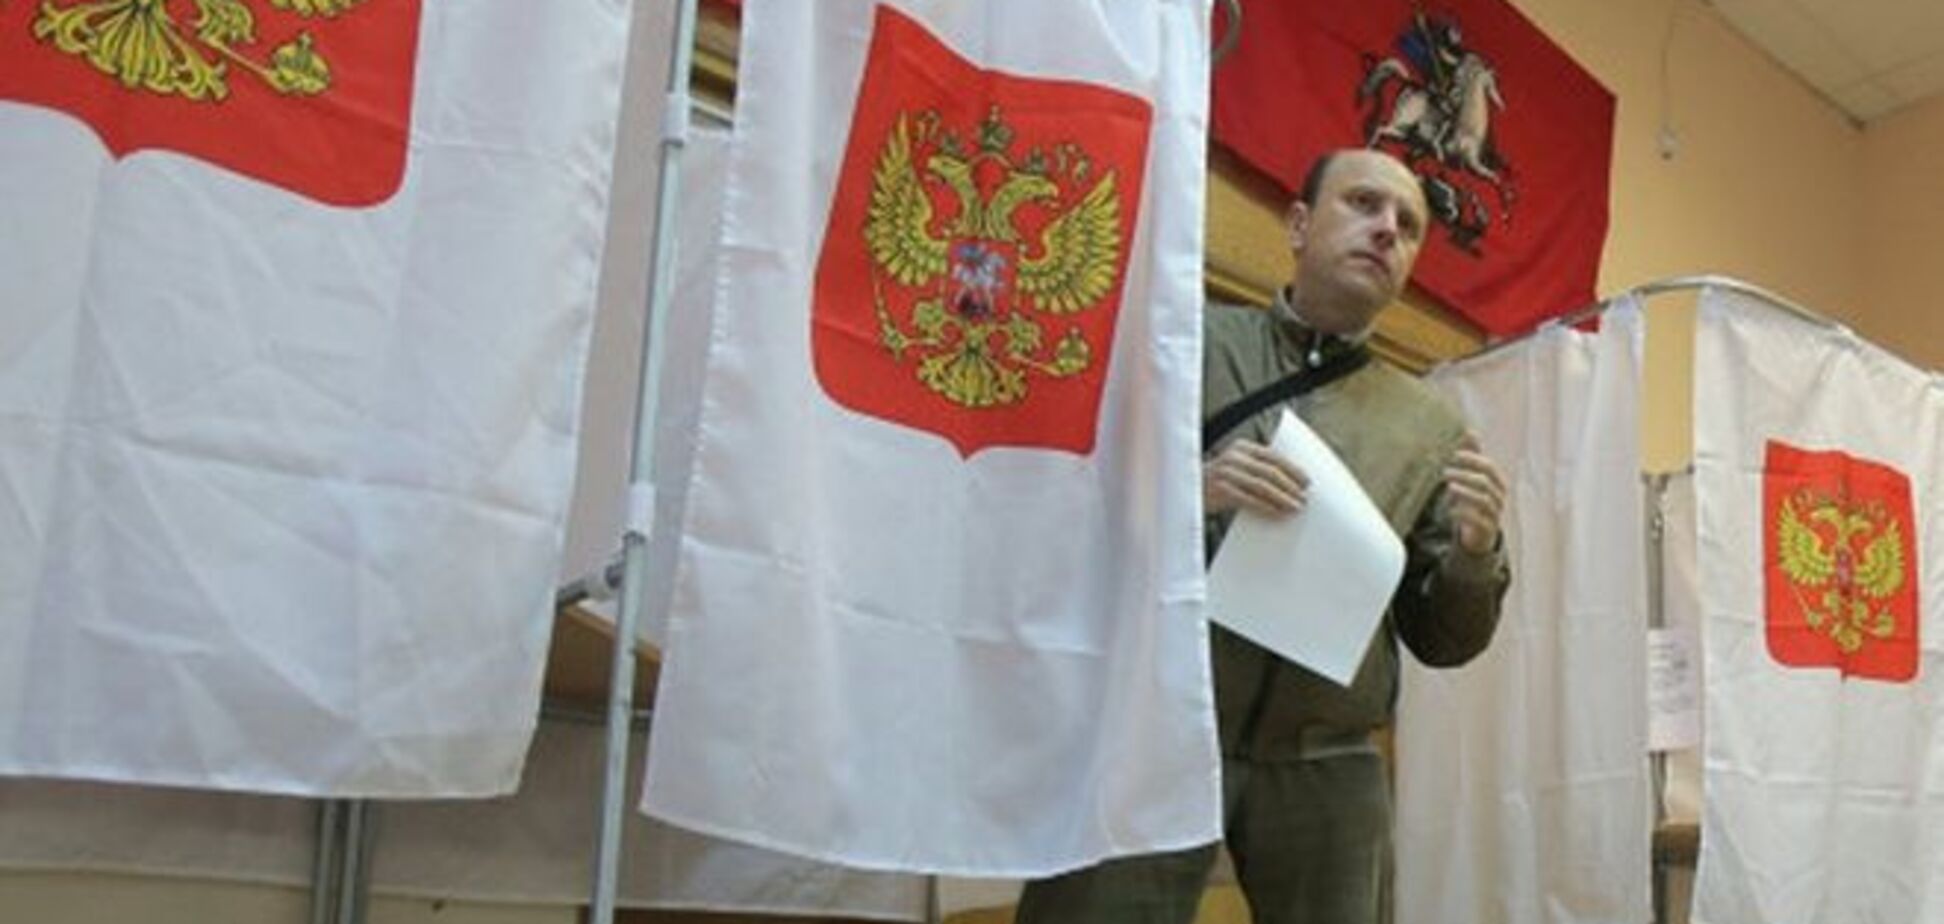 Експерти називають вибори в Москві зразковими